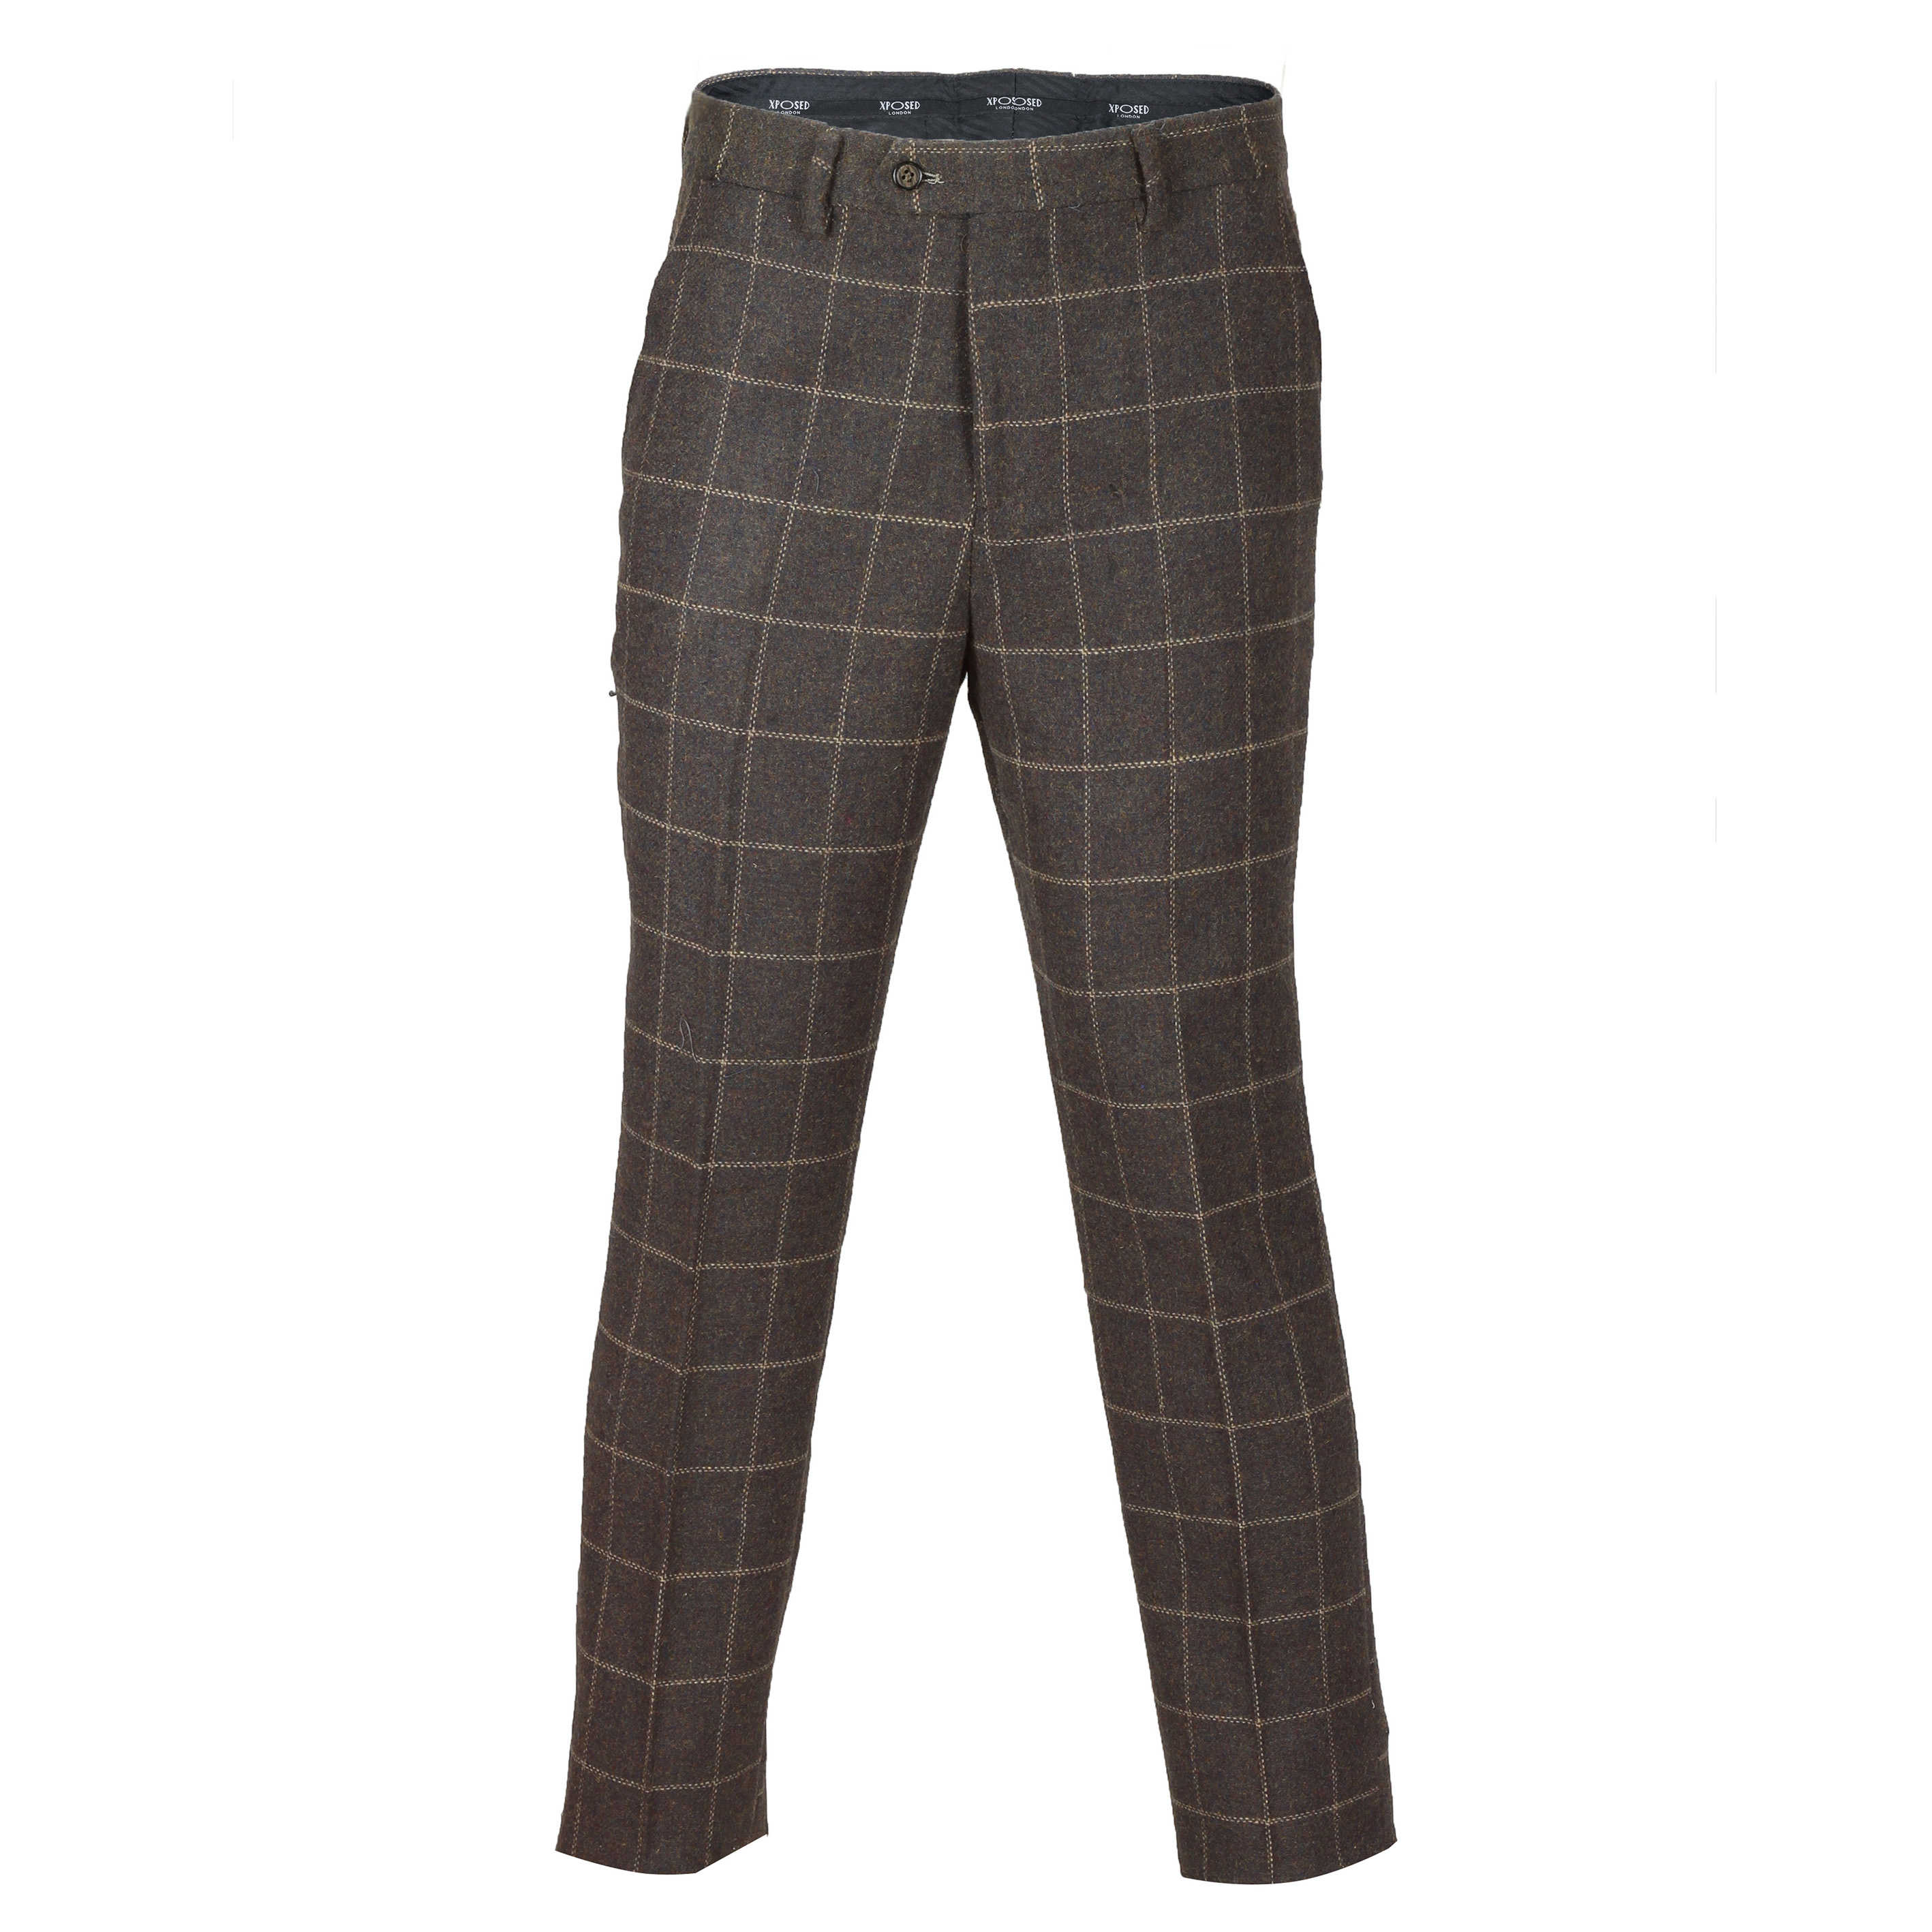 Mens Brown Vintage Tweed Check Trousers Retro Herringbone Classic Peaky ...